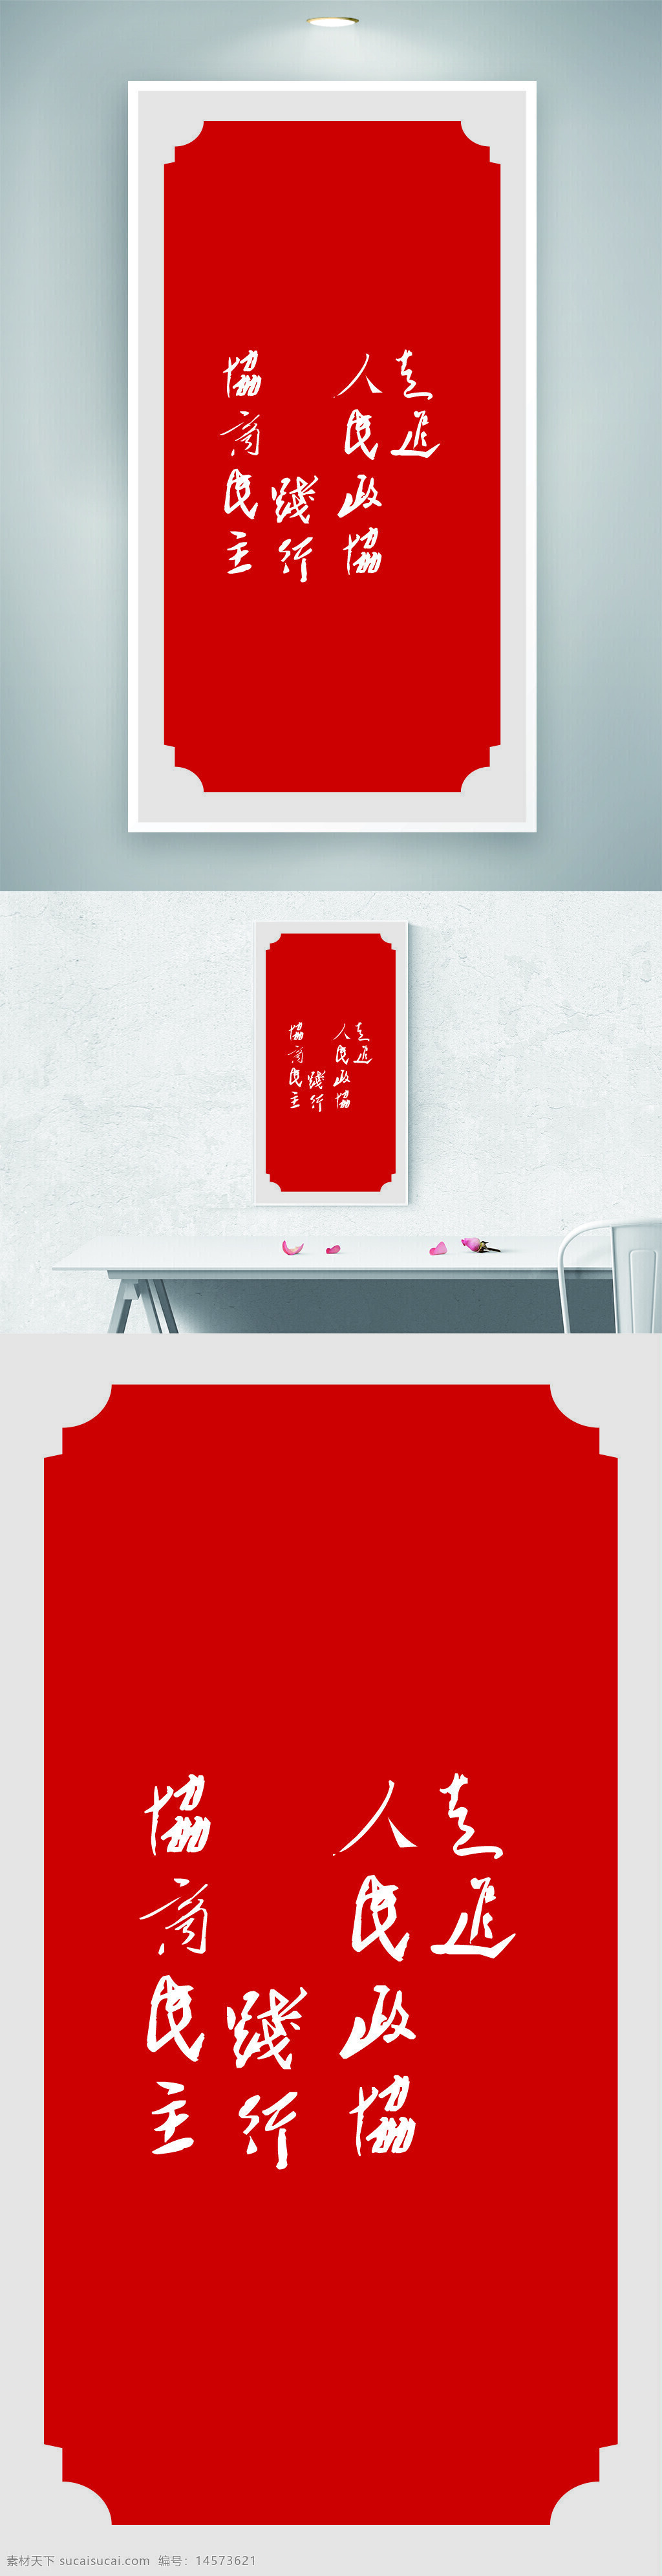 政协 政协海报 红色海报 党建 单位海报 单位挂画 挂画 政协标语 标语 党建标语。